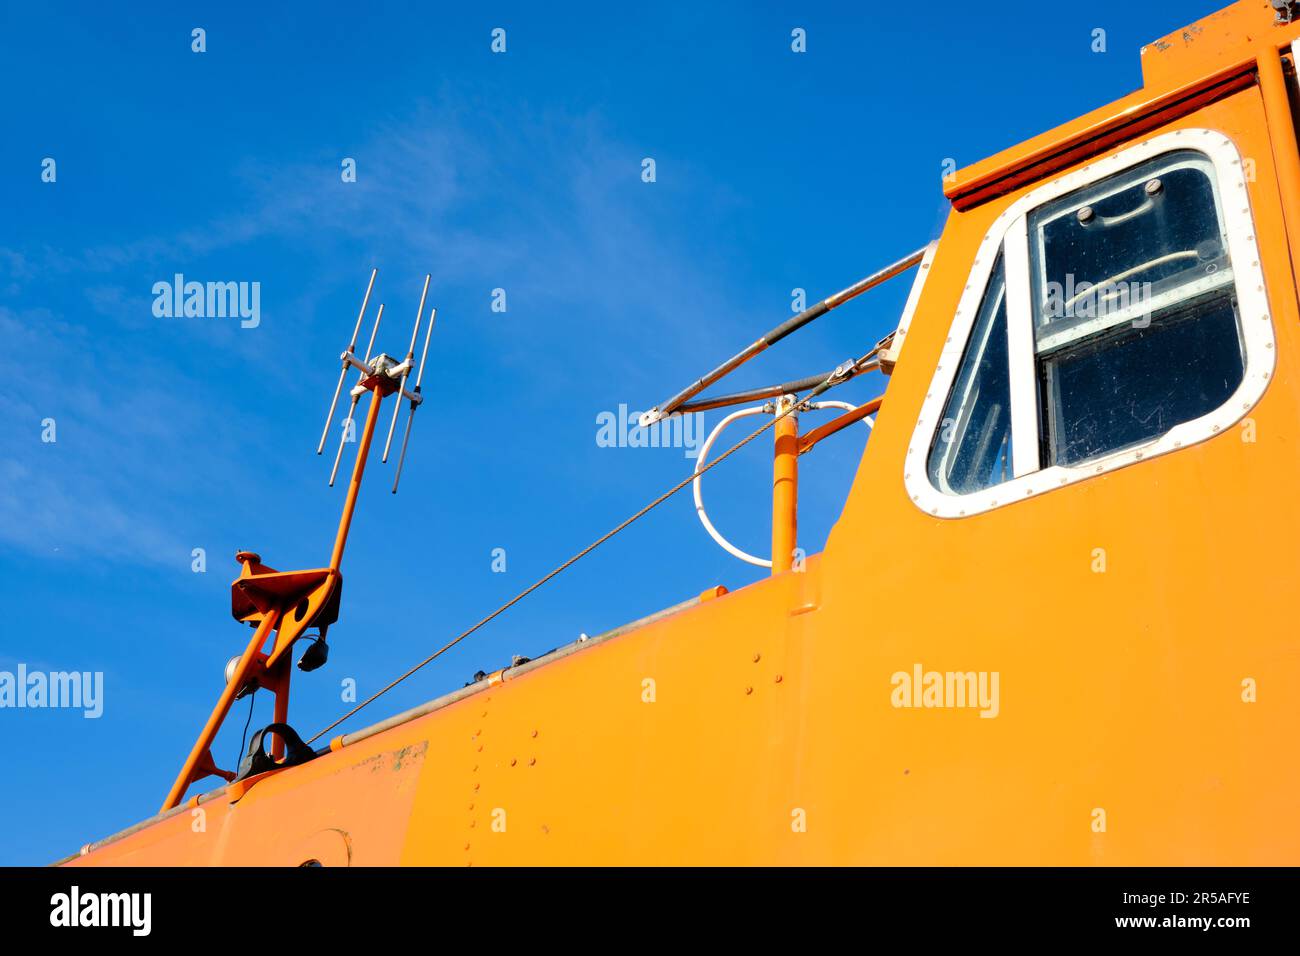 Mât de communication sur un canot de sauvetage orange vif ou un bateau de sauvetage contre un ciel bleu clair. Banque D'Images